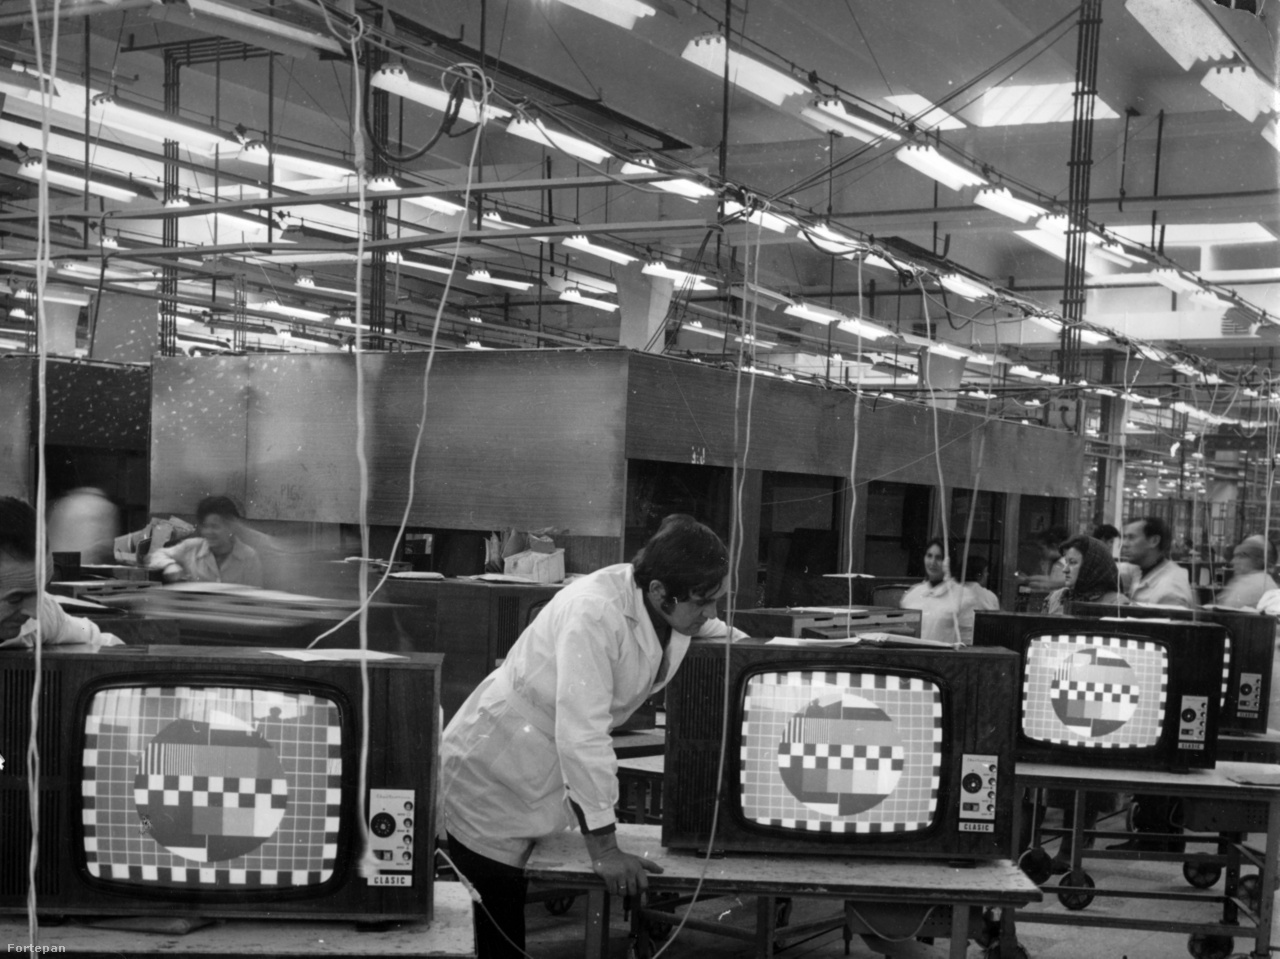 A bukaresti televíziógyár (Electronica)  1960-ban nyitotta meg kapuit, előtte rádiógyár volt. Nem sokkal utána Vasile Cätuneanu, az Electronica gyár főmérnökhelyettese így nyilatkozott az Új Élet termelési riporton lévő munkatársának: "Ha, mondjuk, egy 1700 táján élt ember látná ezt a gyárat, és végignézne egy televíziós adást, az ördöggel való cimboraságért jelentene fel". A kép jóval később, 1980-ban készült. Ekkoriban hatféle készüléket gyártottak a 44 centiméteres képernyő átmérőtől a 65 centiméteresig.